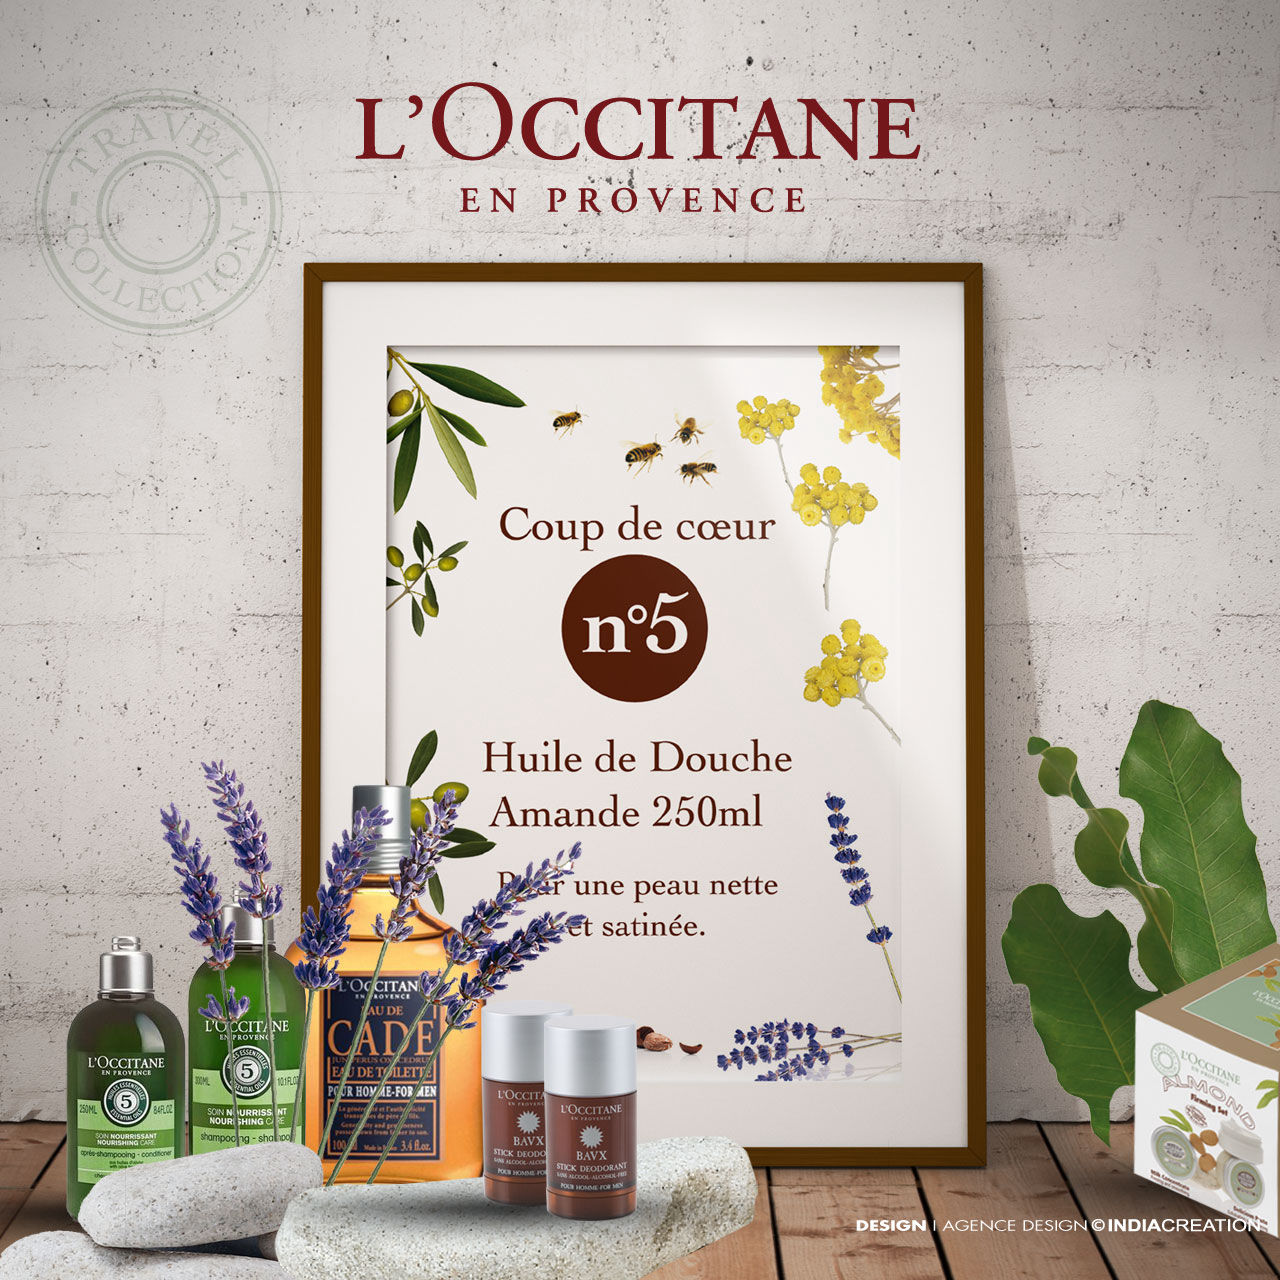 Design packaging Occitane en Provence